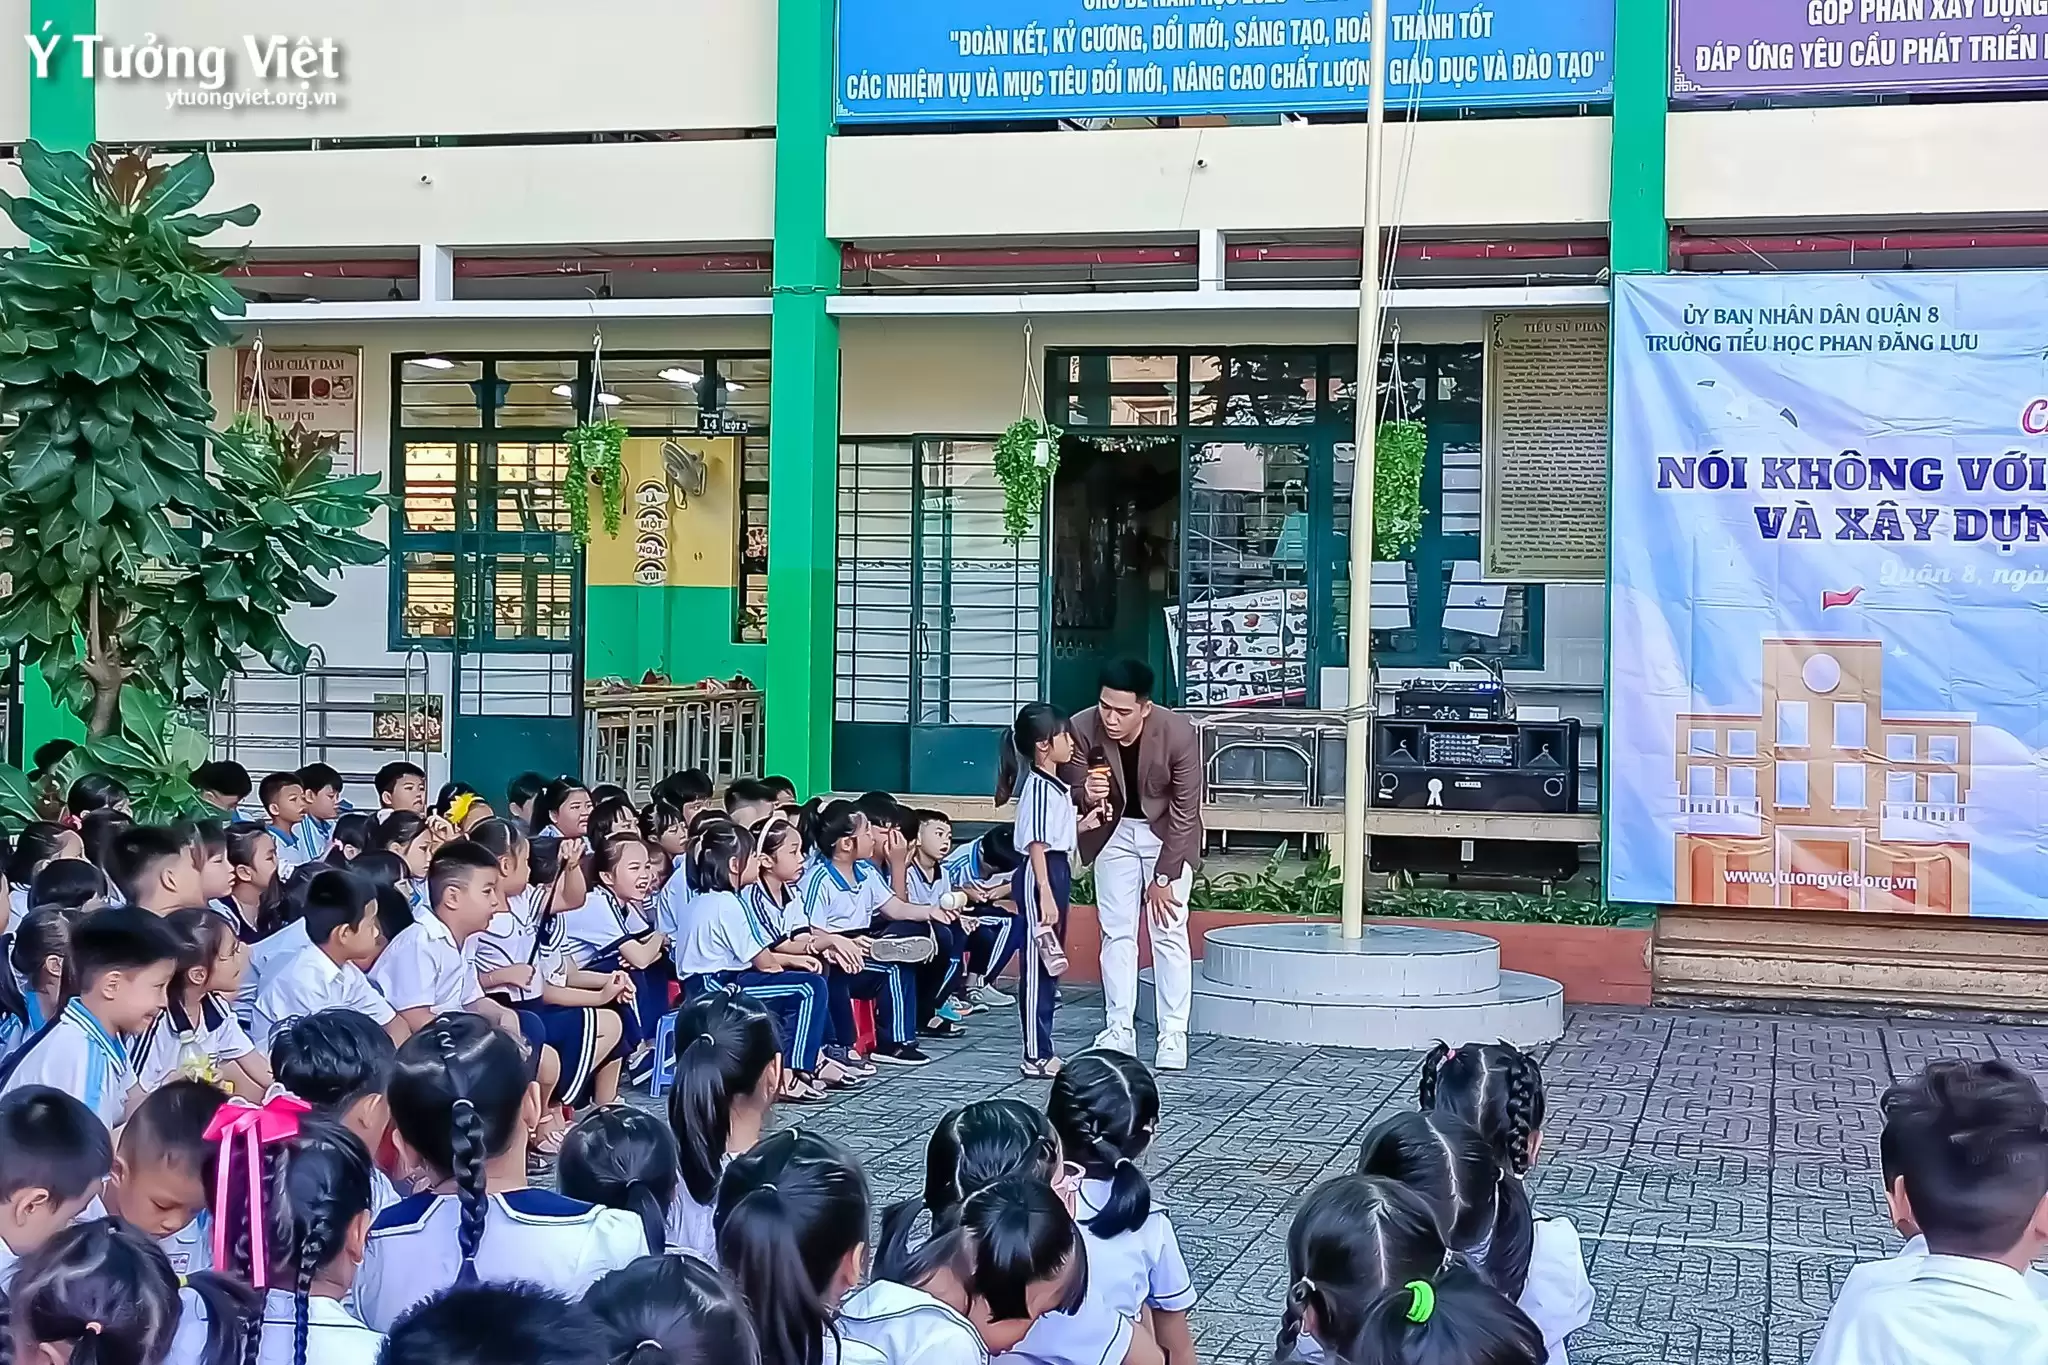 “Nói không với bạo lực học đường – Xây dựng tình bạn đẹp” cùng trường TH Phan Đăng Lưu